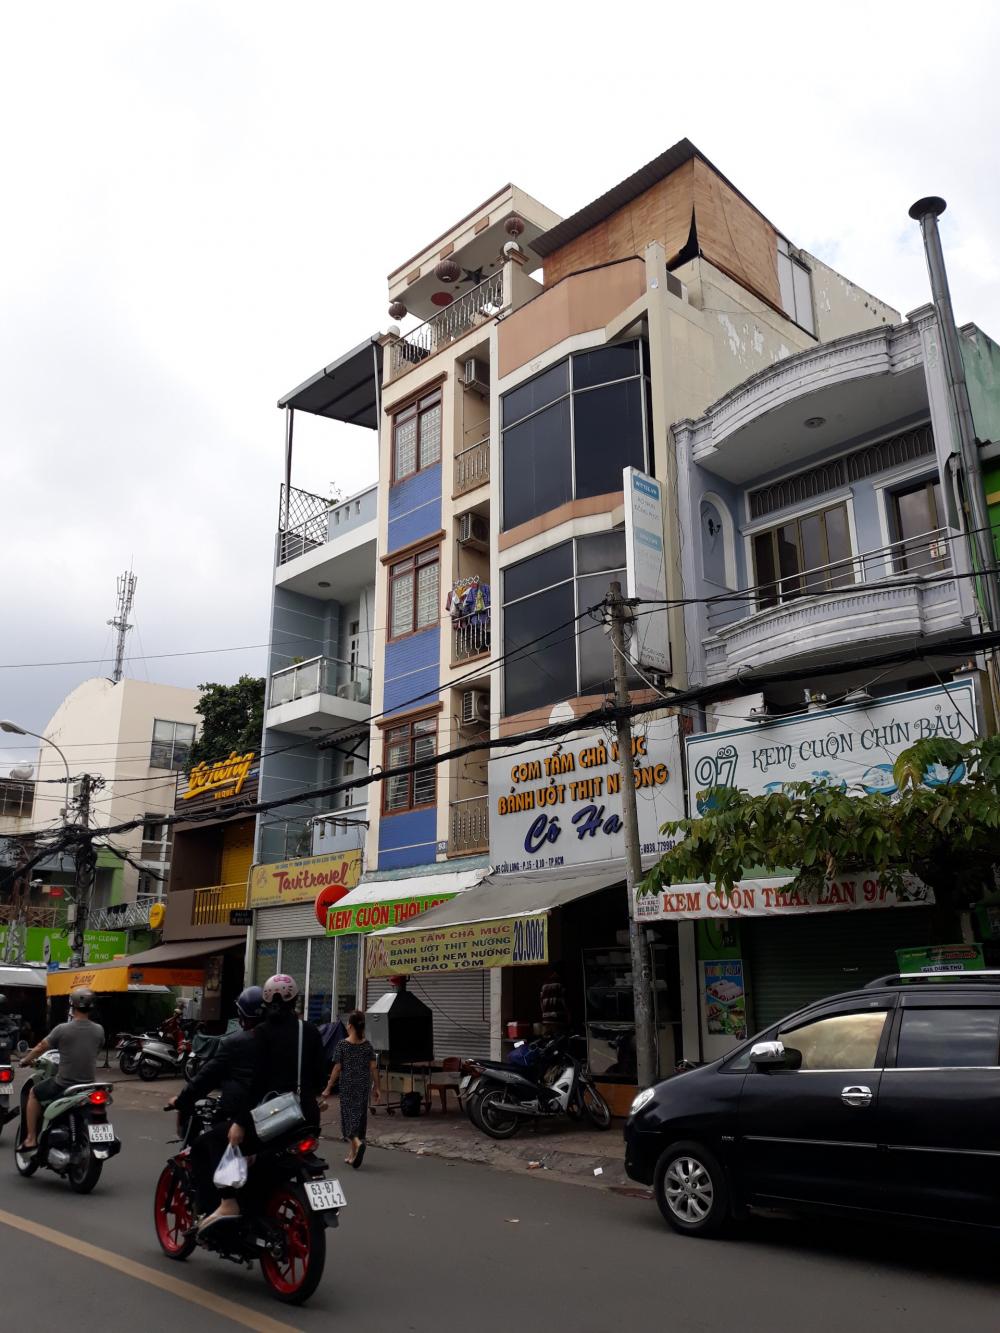 Bán nhà mặt tiền Nguyễn Trãi ngang 3,5x25 m, phường 2 quận 5, giá 30 tỷ 5.